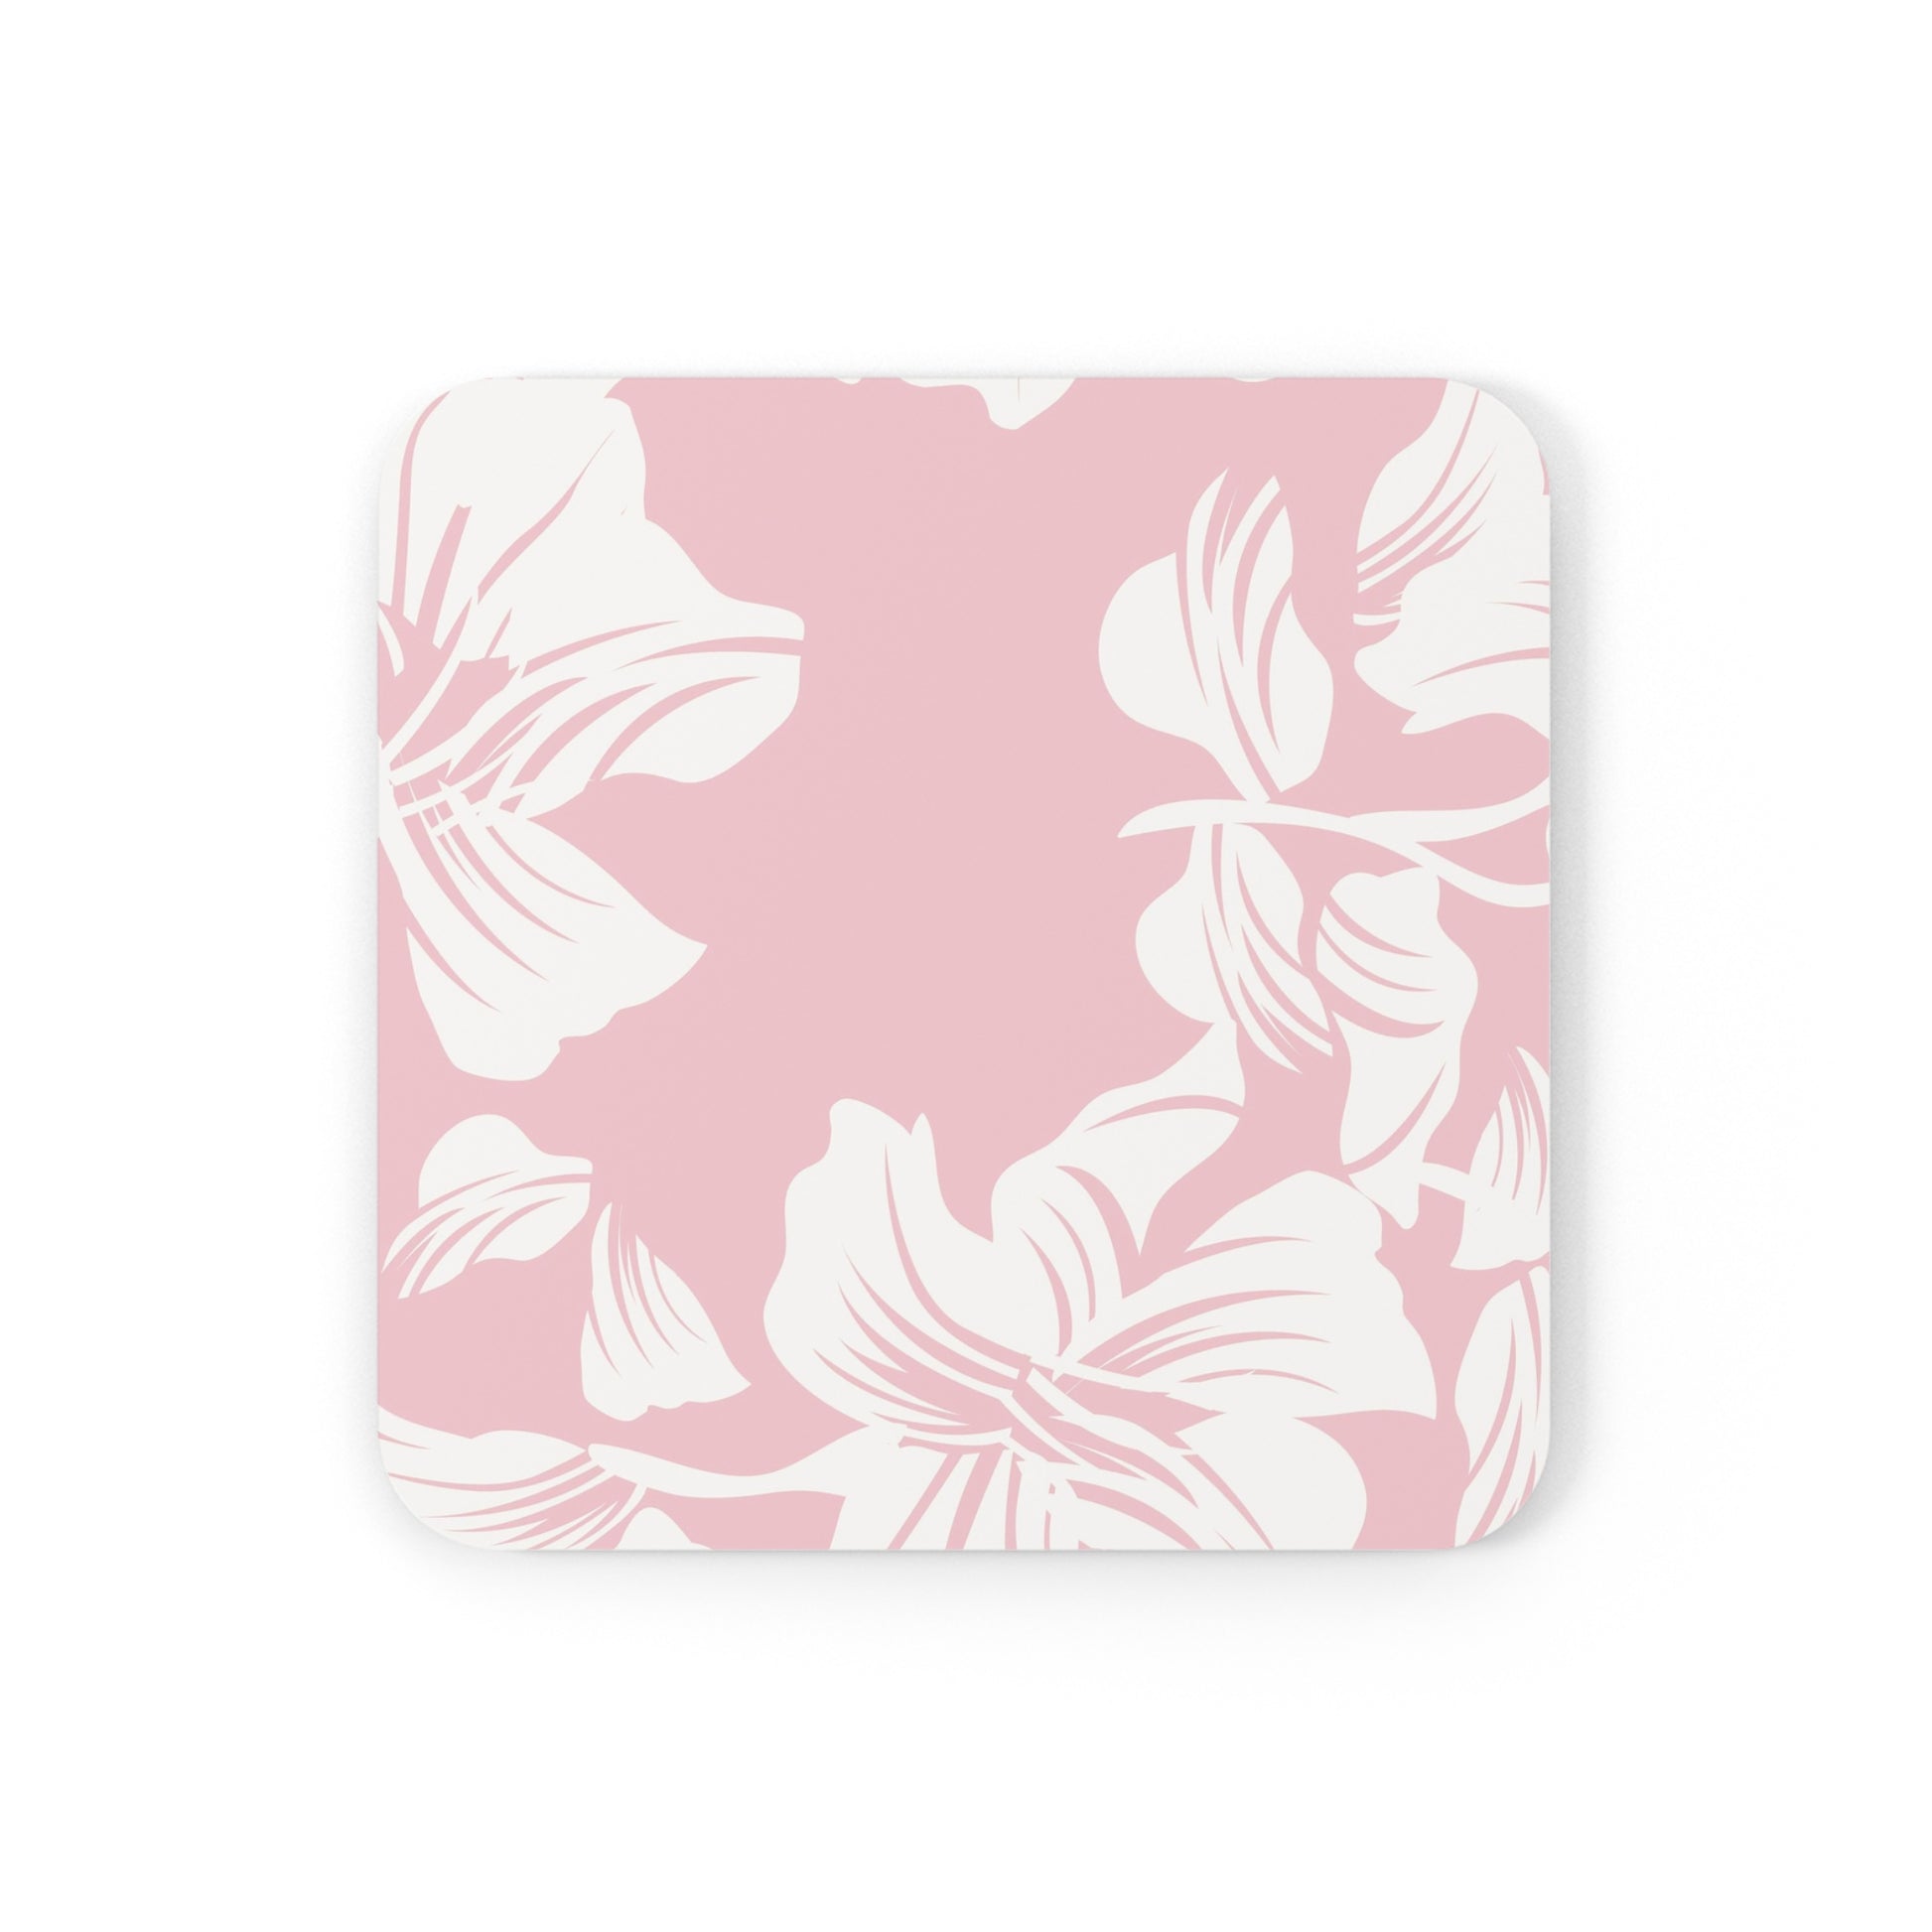 Pink Hawaiian - Corkwood Coaster Set Coaster